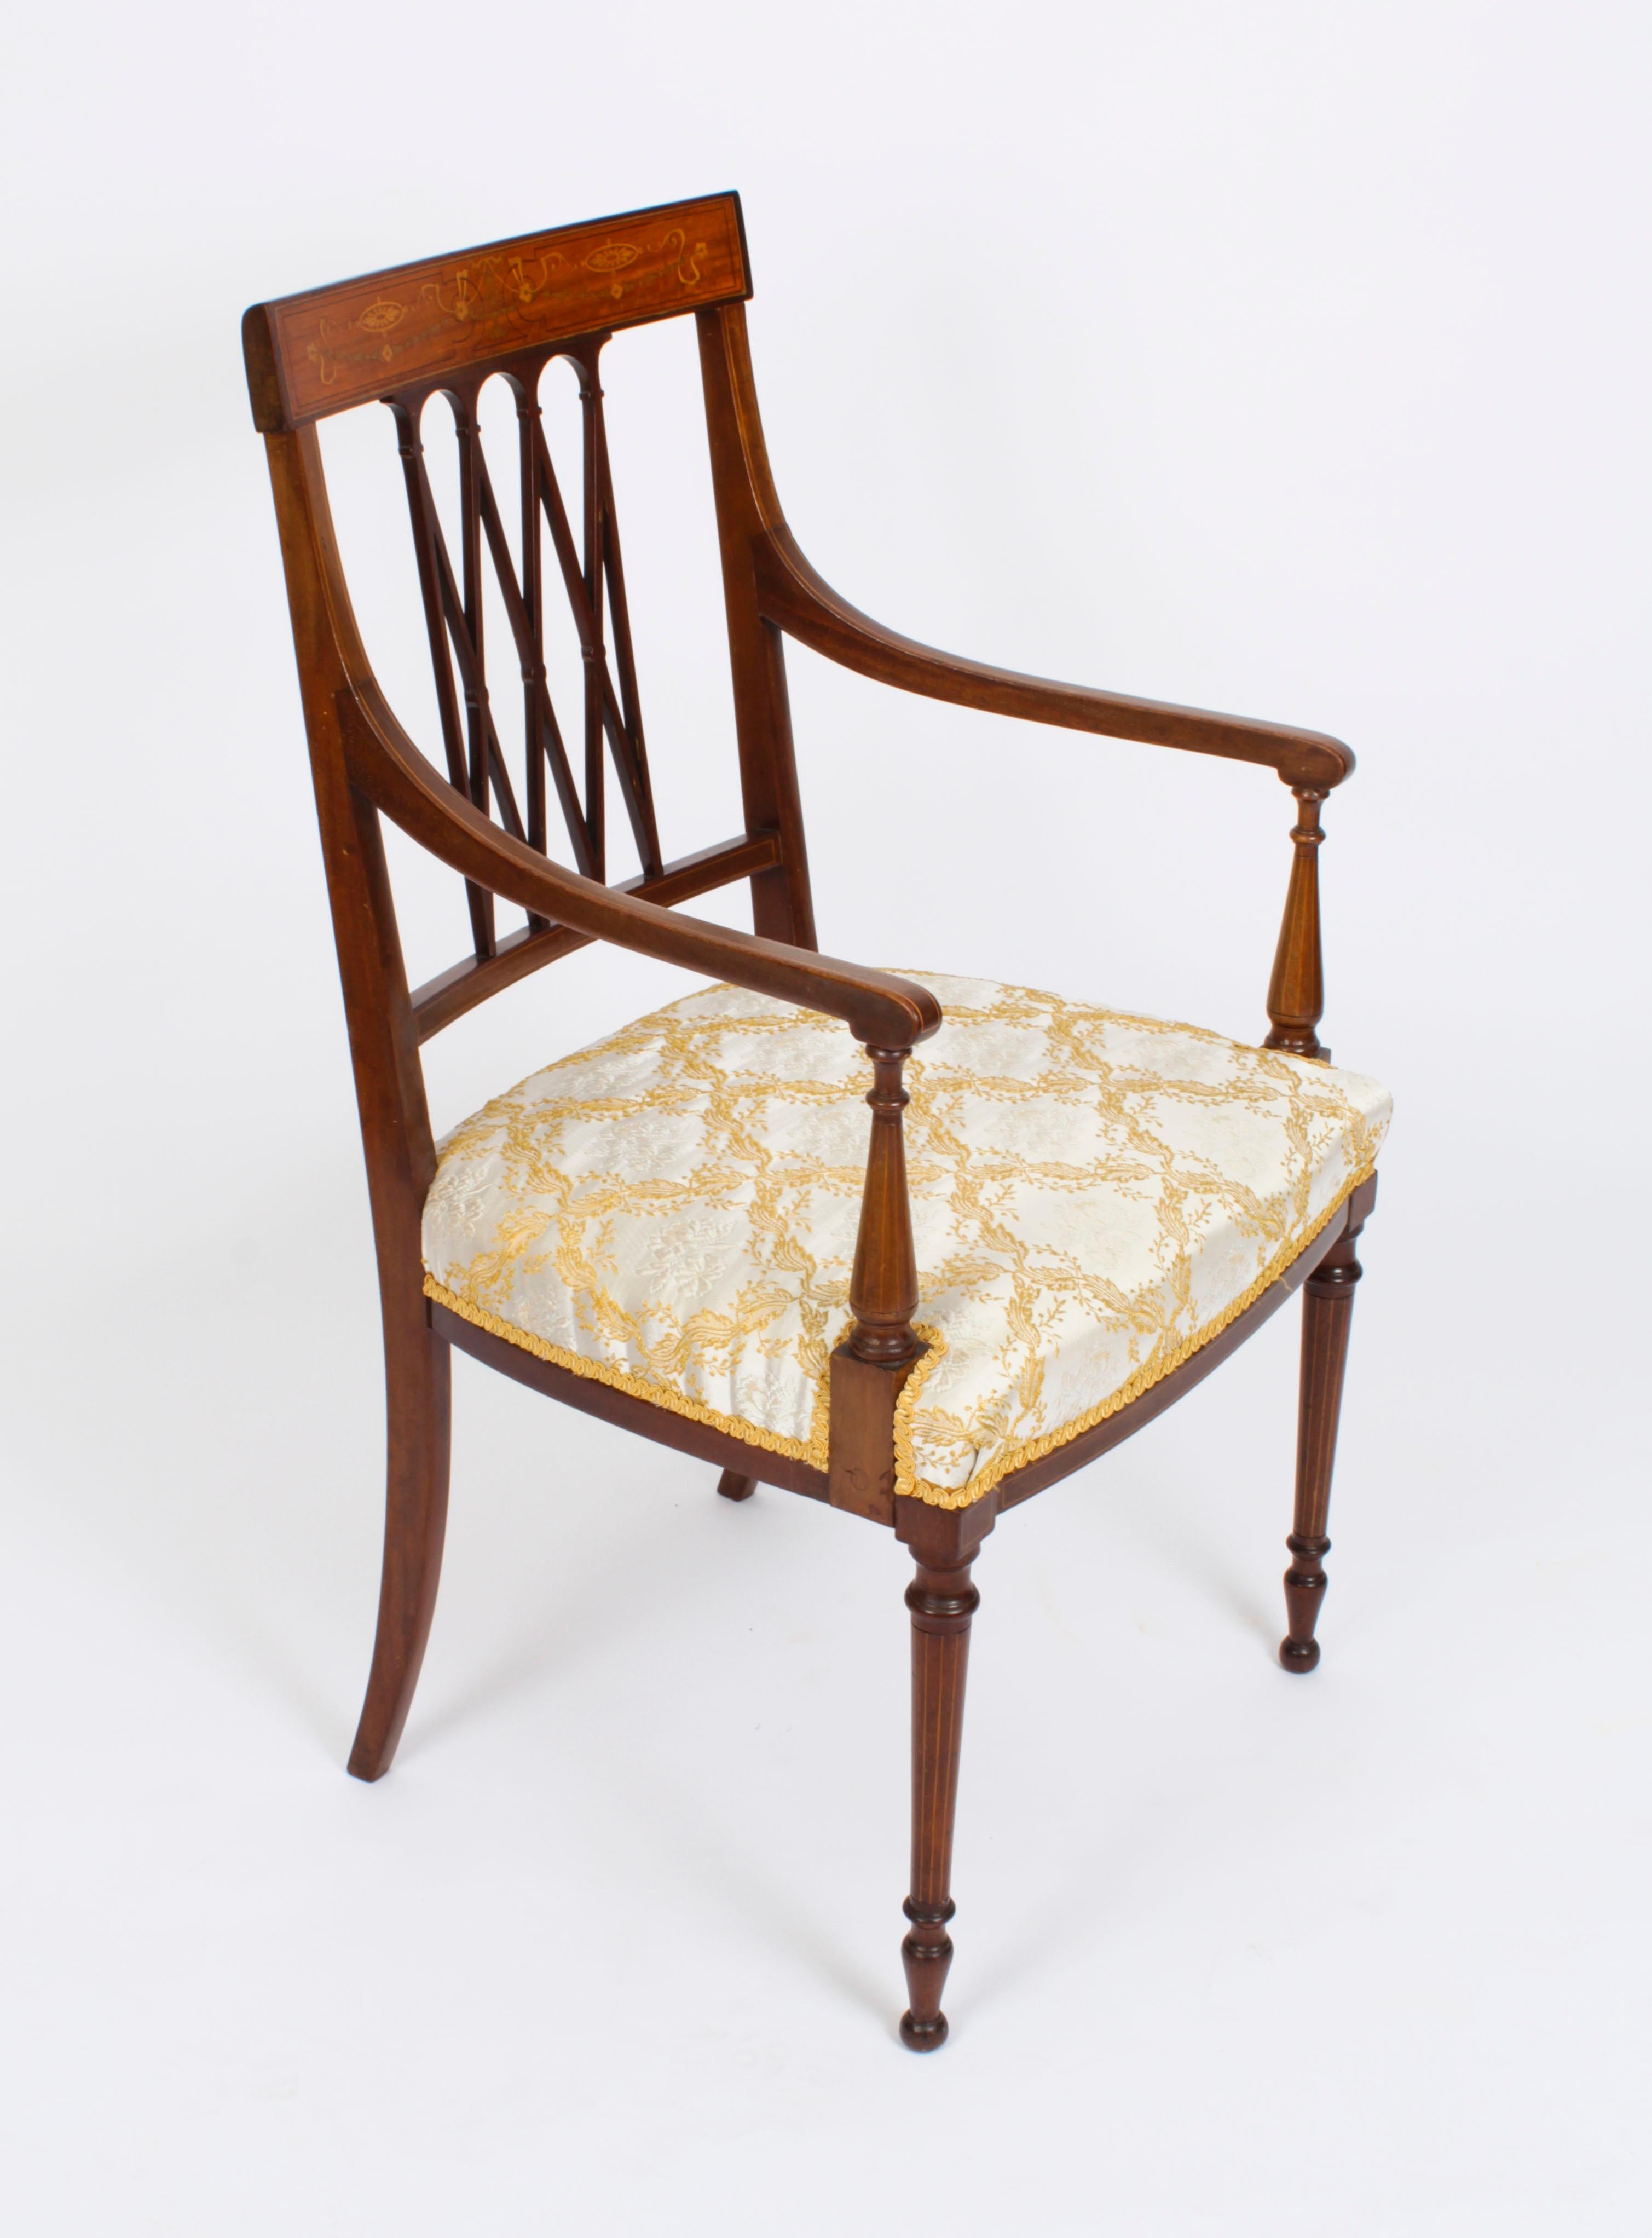 Il s'agit d'une fantastique chaise d'appoint anglaise de la fin de l'époque victorienne de style Sheraton, fabriquée par le célèbre détaillant et fabricant Maple & Co, et datant de 1870.
 
Fabriqué de main de maître dans un superbe acajou, avec un